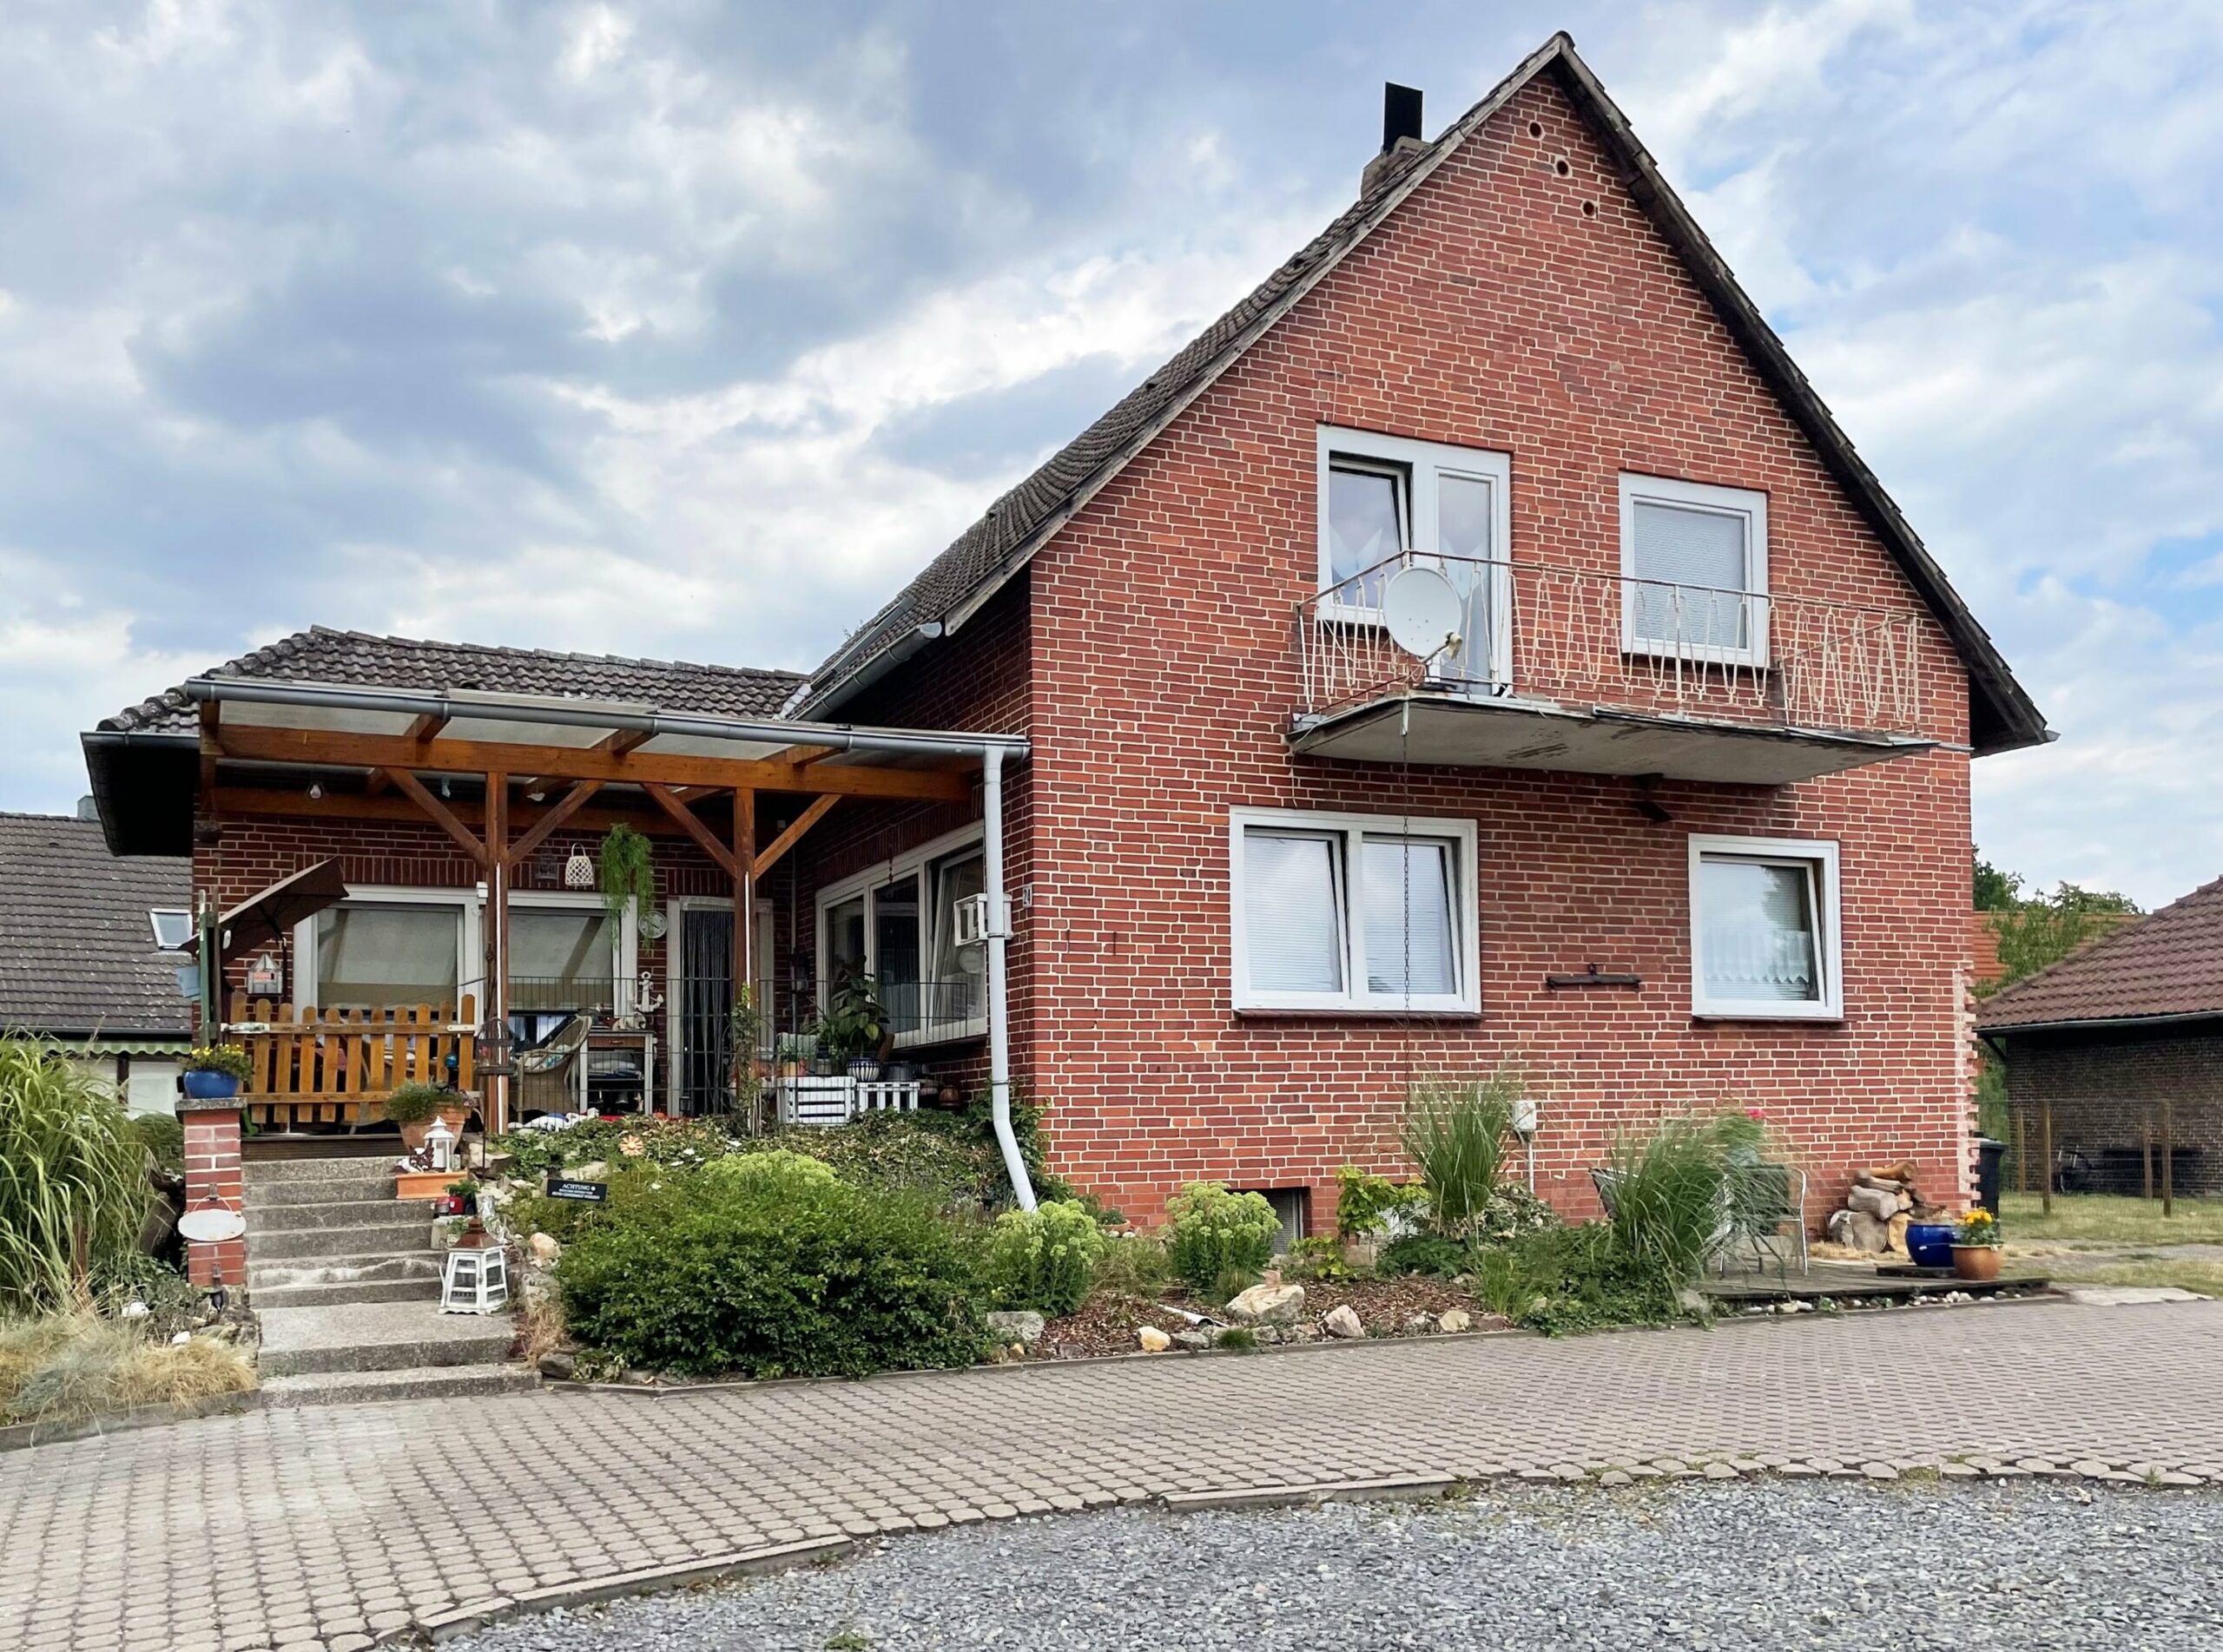 TOP Preis!!! Zwei leerstehende Häuser auf großem Grundstück in Leveste, 30989 Gehrden, Einfamilienhaus